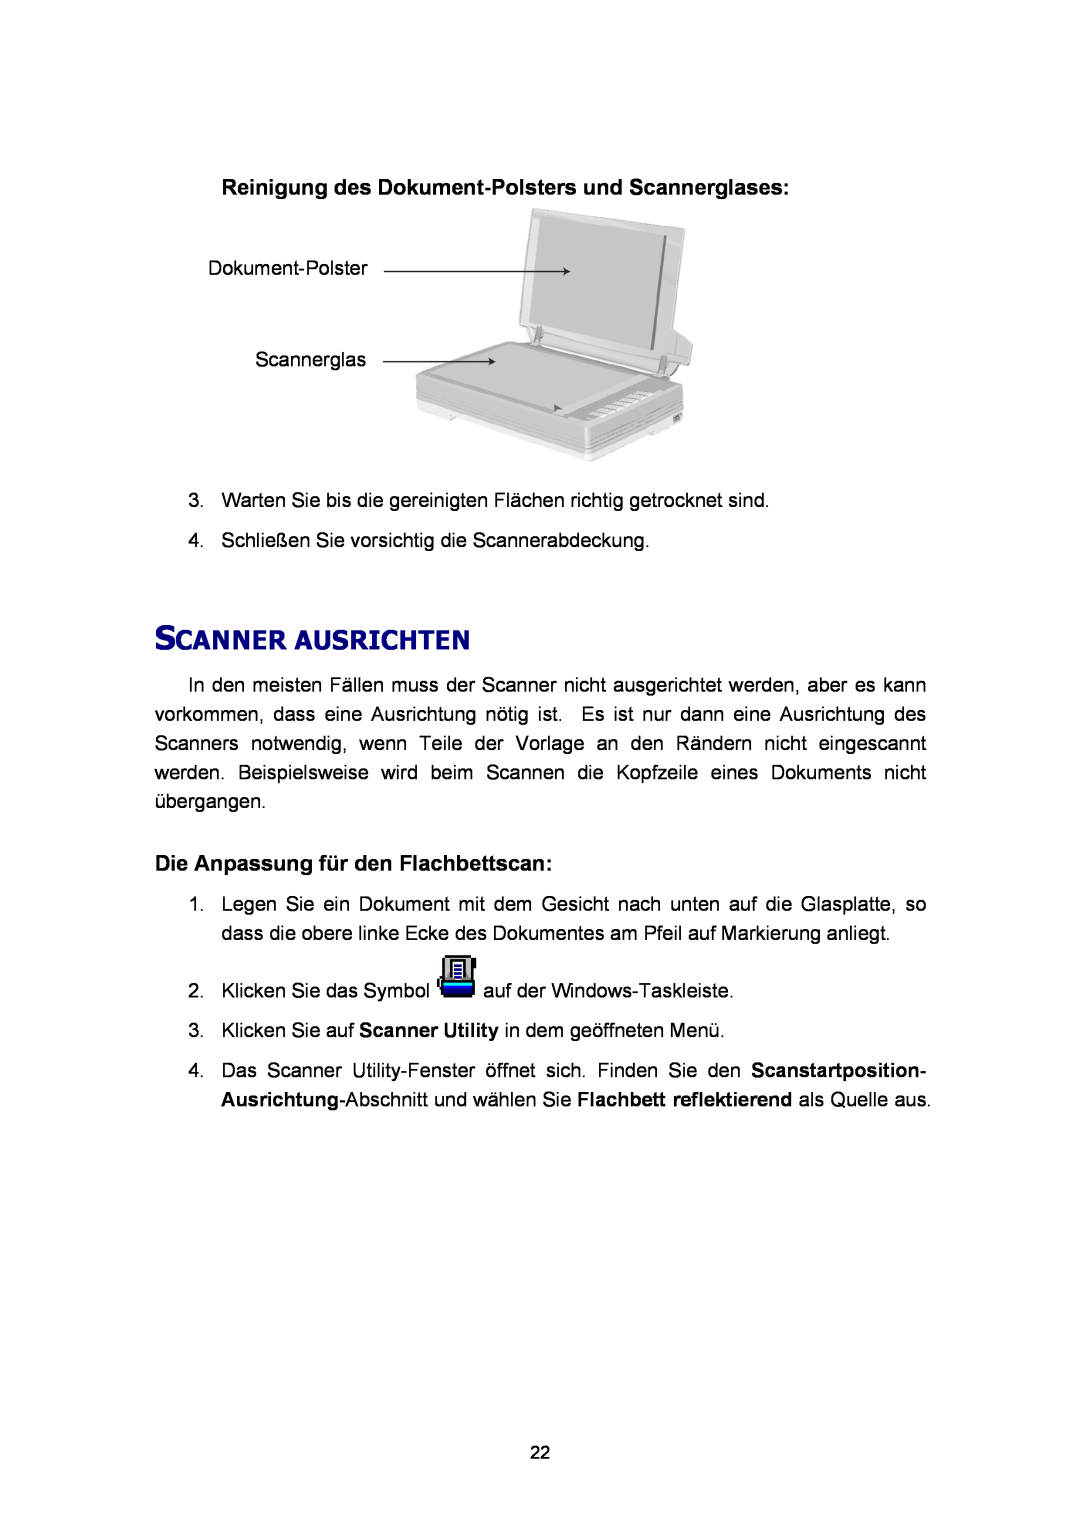 Plustek A360 Scanner Ausrichten, Reinigung des Dokument-Polsters und Scannerglases, Die Anpassung für den Flachbettscan 